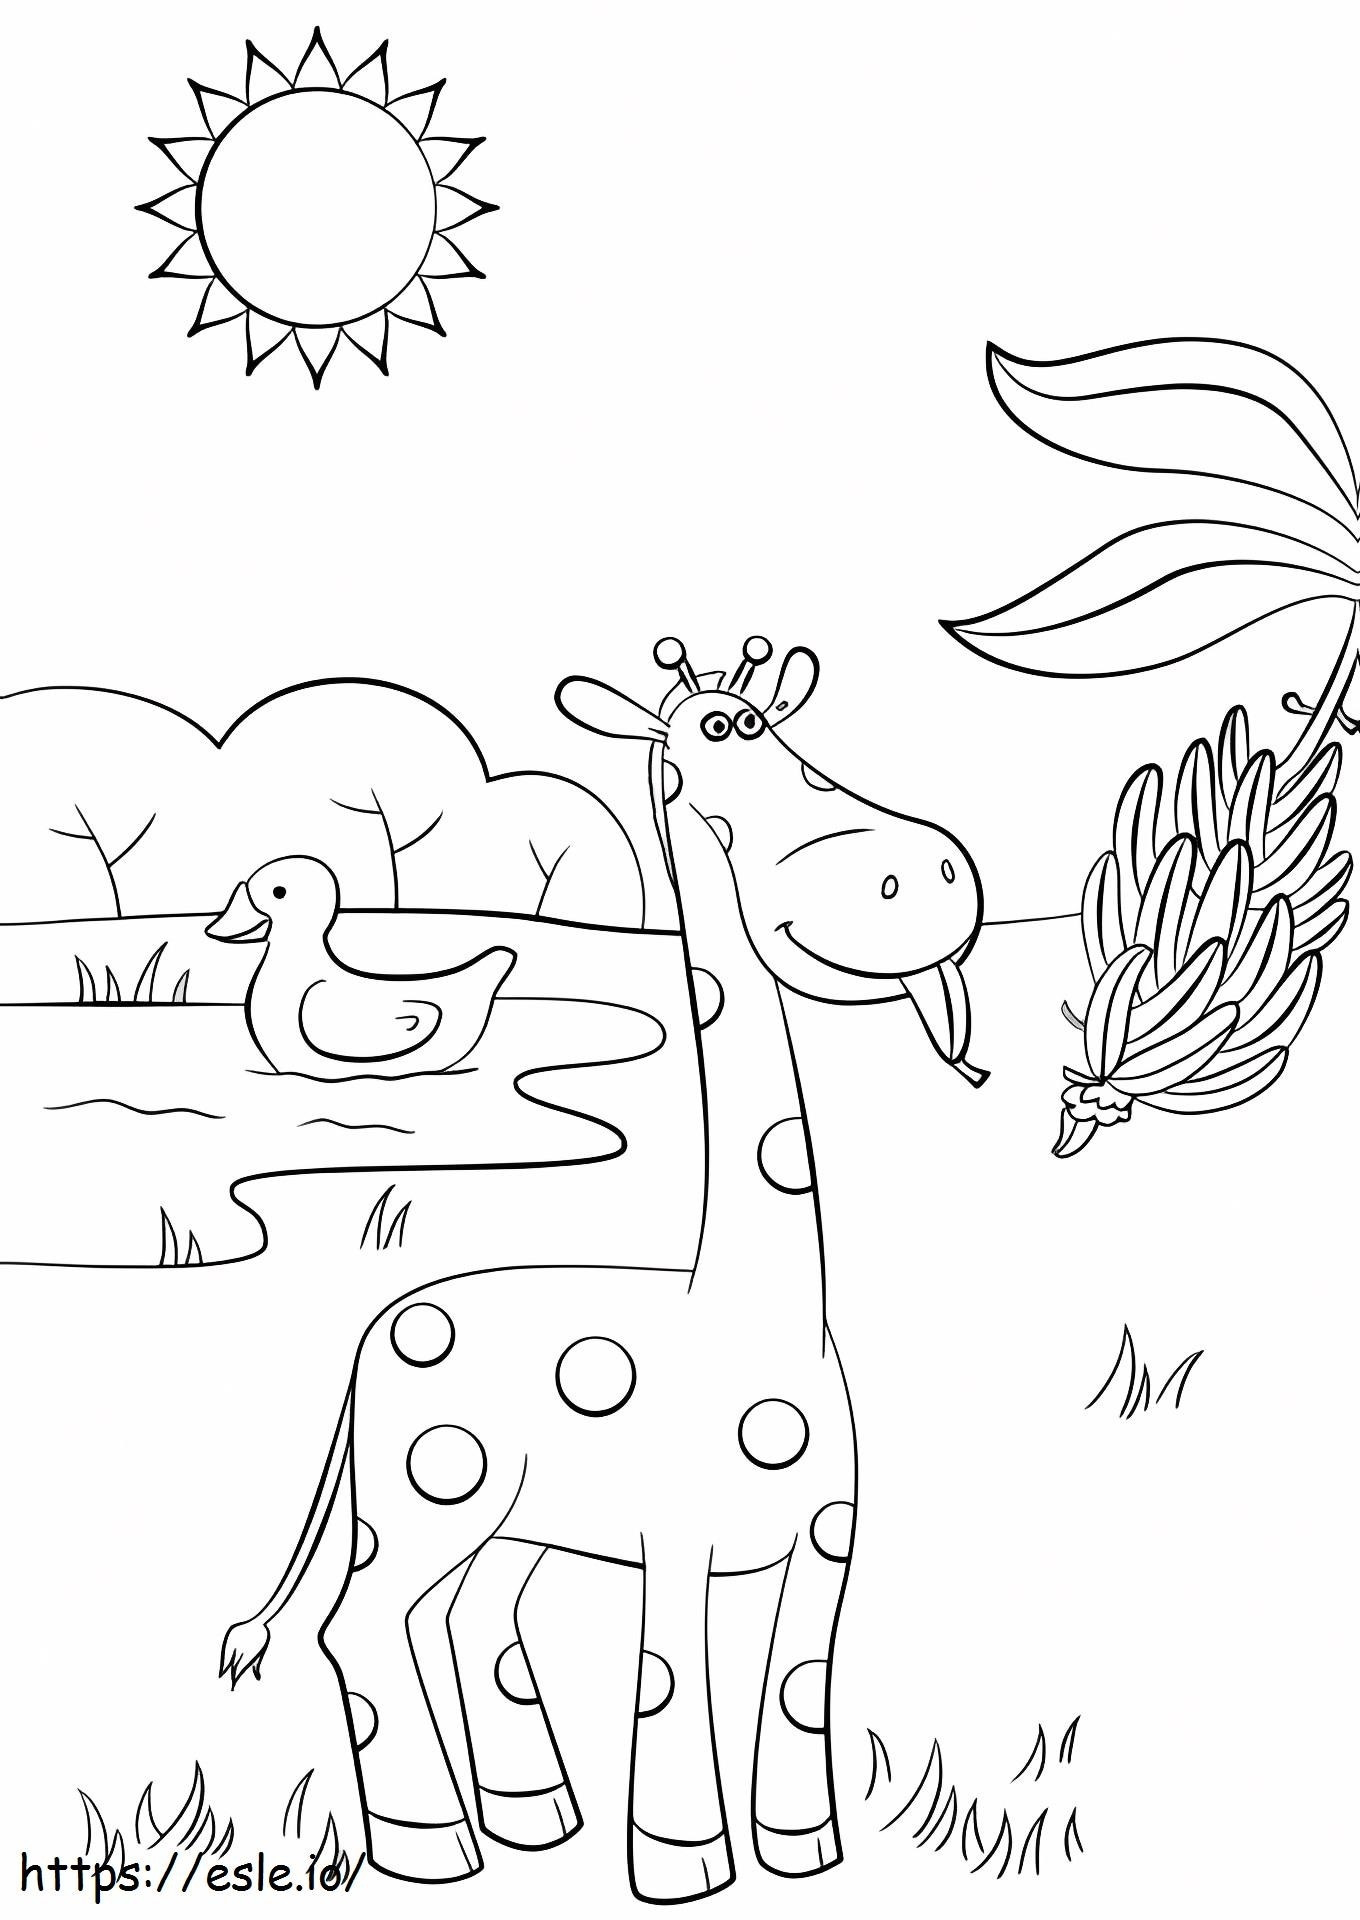 1529035390 Girafa Comendo Banana para colorir